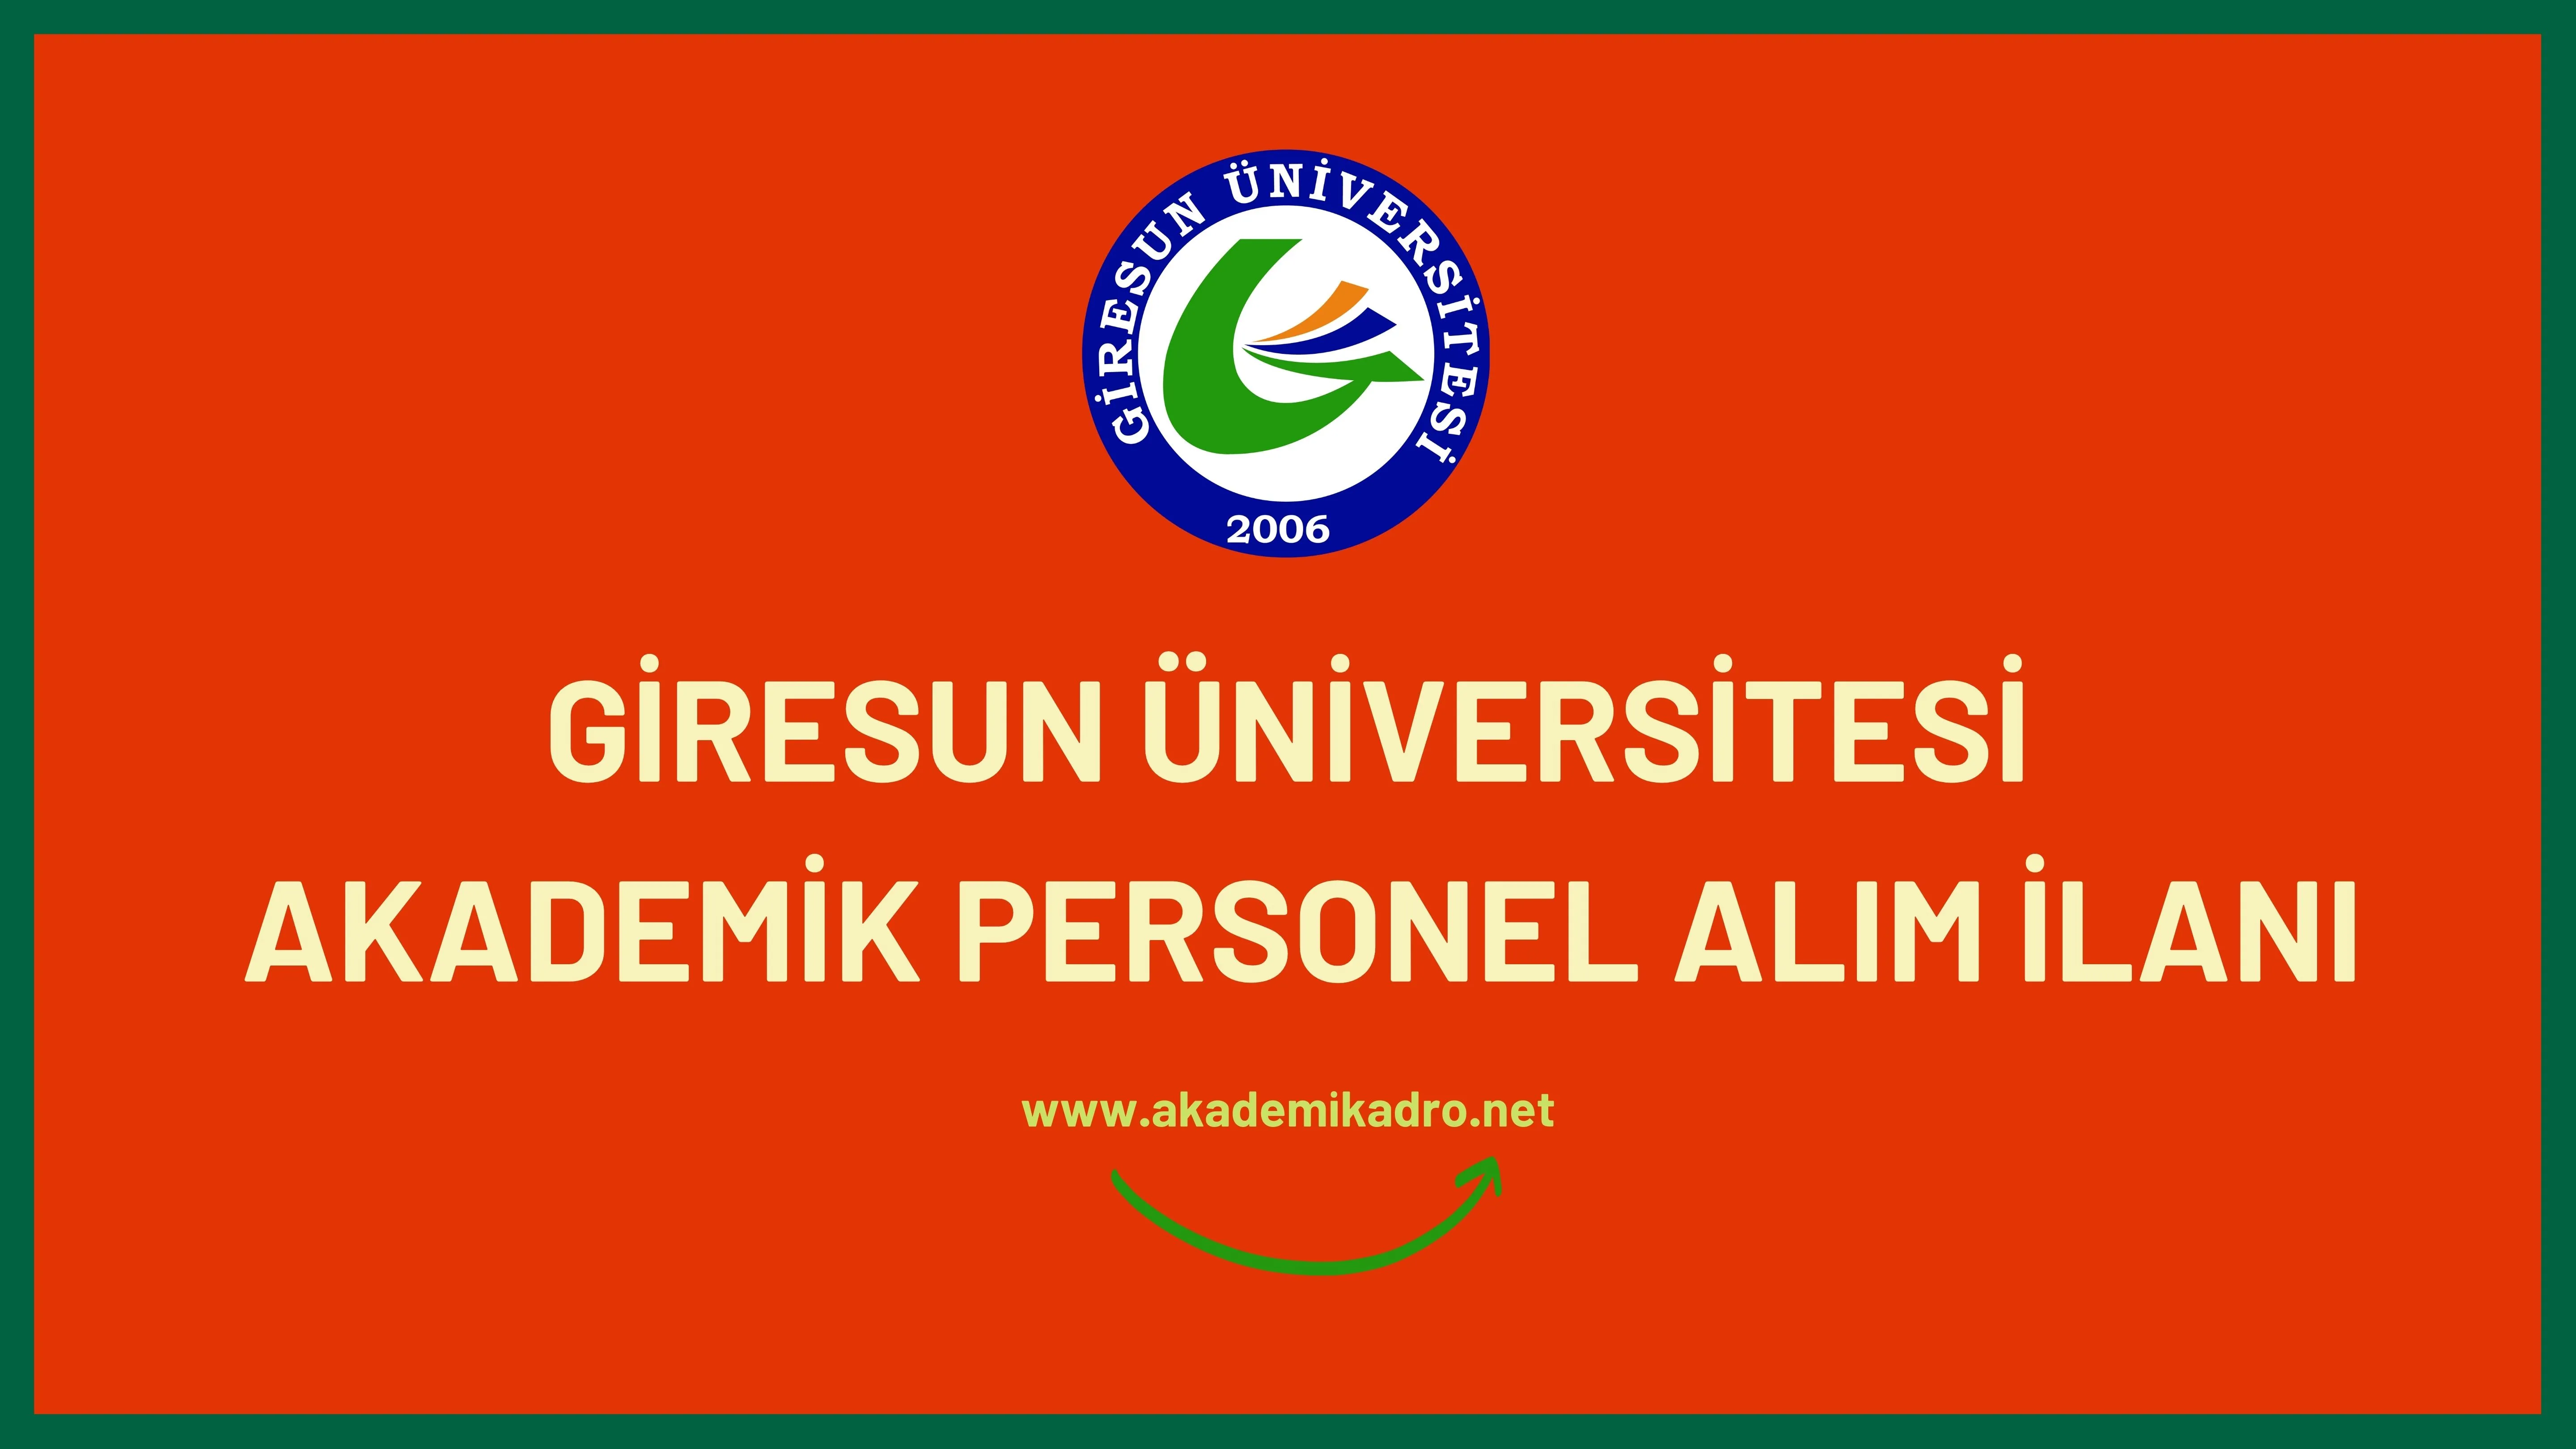 Giresun Üniversitesi birçok alandan 30 Akademik personel alacak.